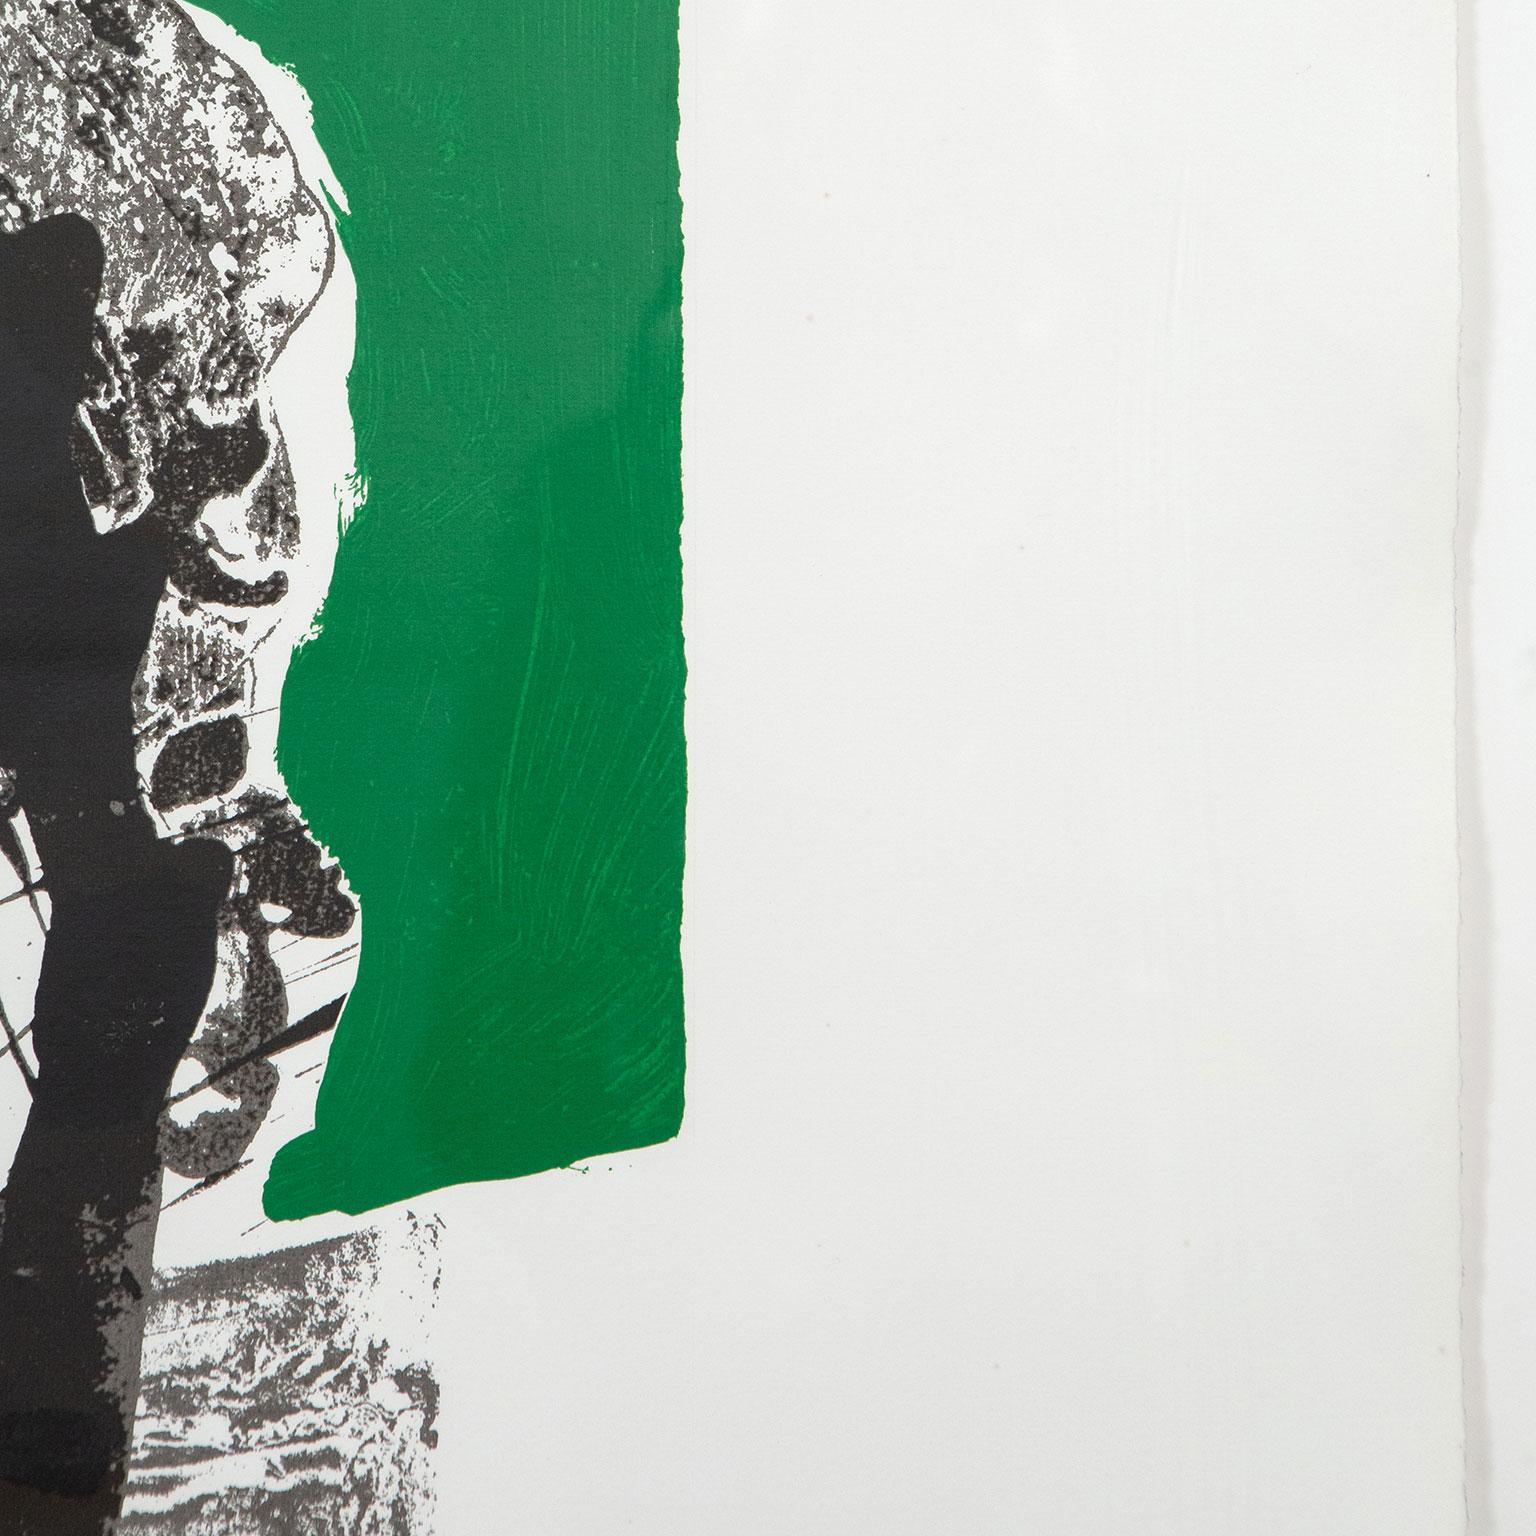 Robert Motherwell (1915-1991), aux côtés de Jackson Pollock, Mark Rothko et Willem de Kooning, a formé le quatuor de peintres abstraits qui a radicalement défini la peinture moderne en Amérique et a fait de New York le nouveau centre du monde de